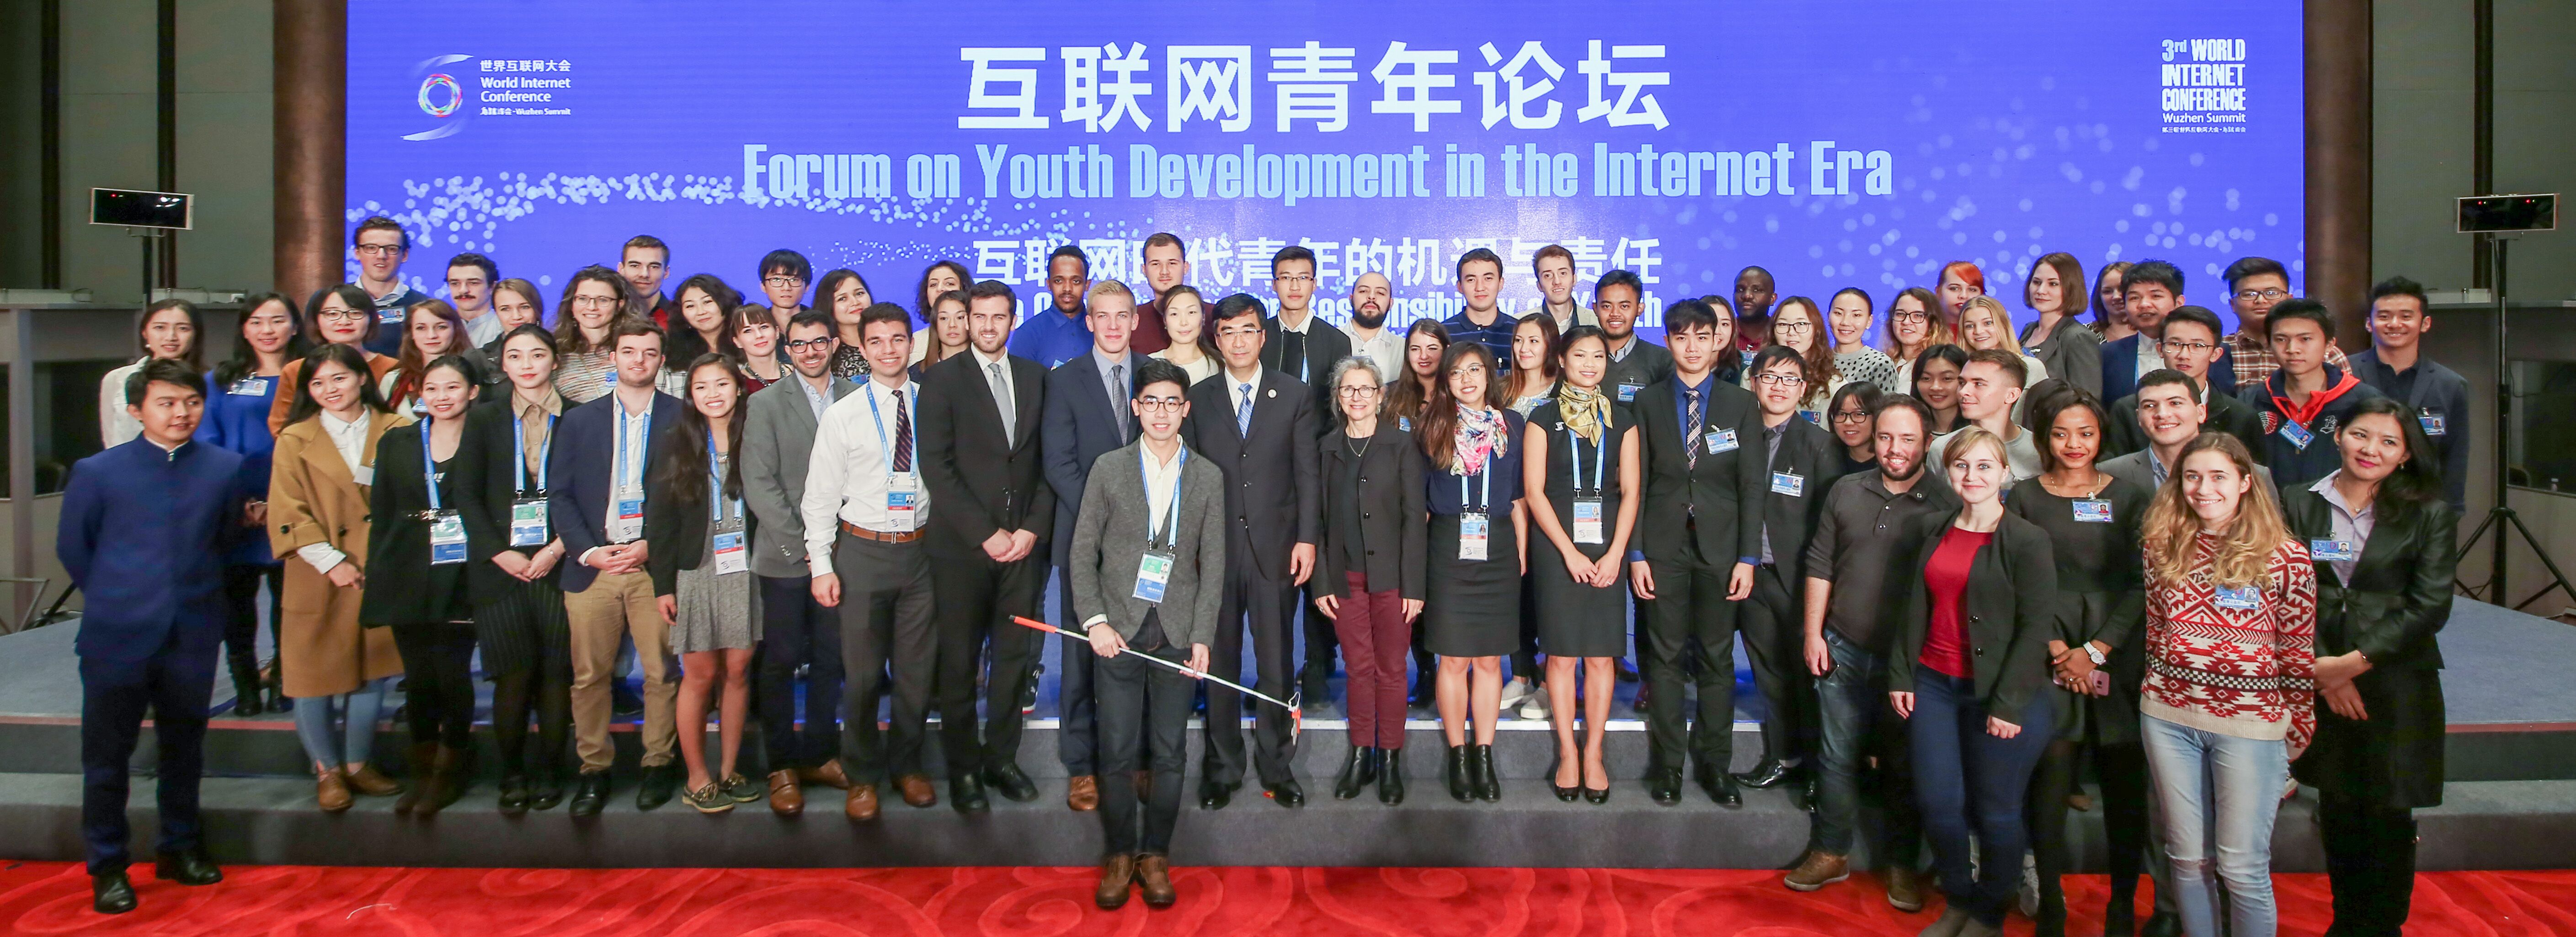 第三屆世界網際網路大會網際網路青年論壇成功舉辦